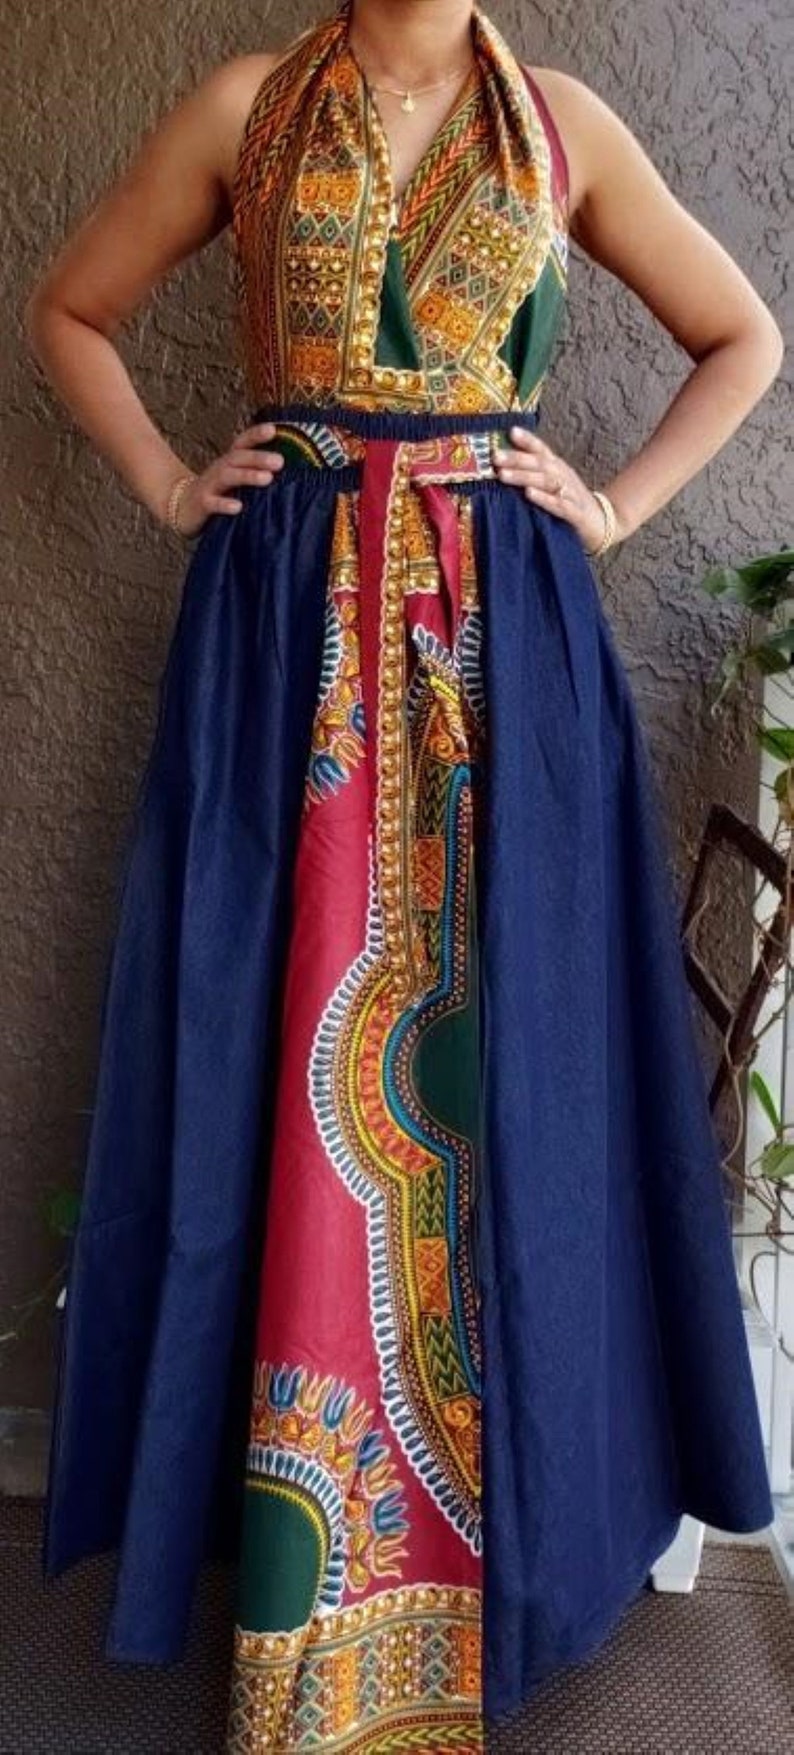 African Print Ankara Style Long Maxi Skirt with matching Sash | Etsy